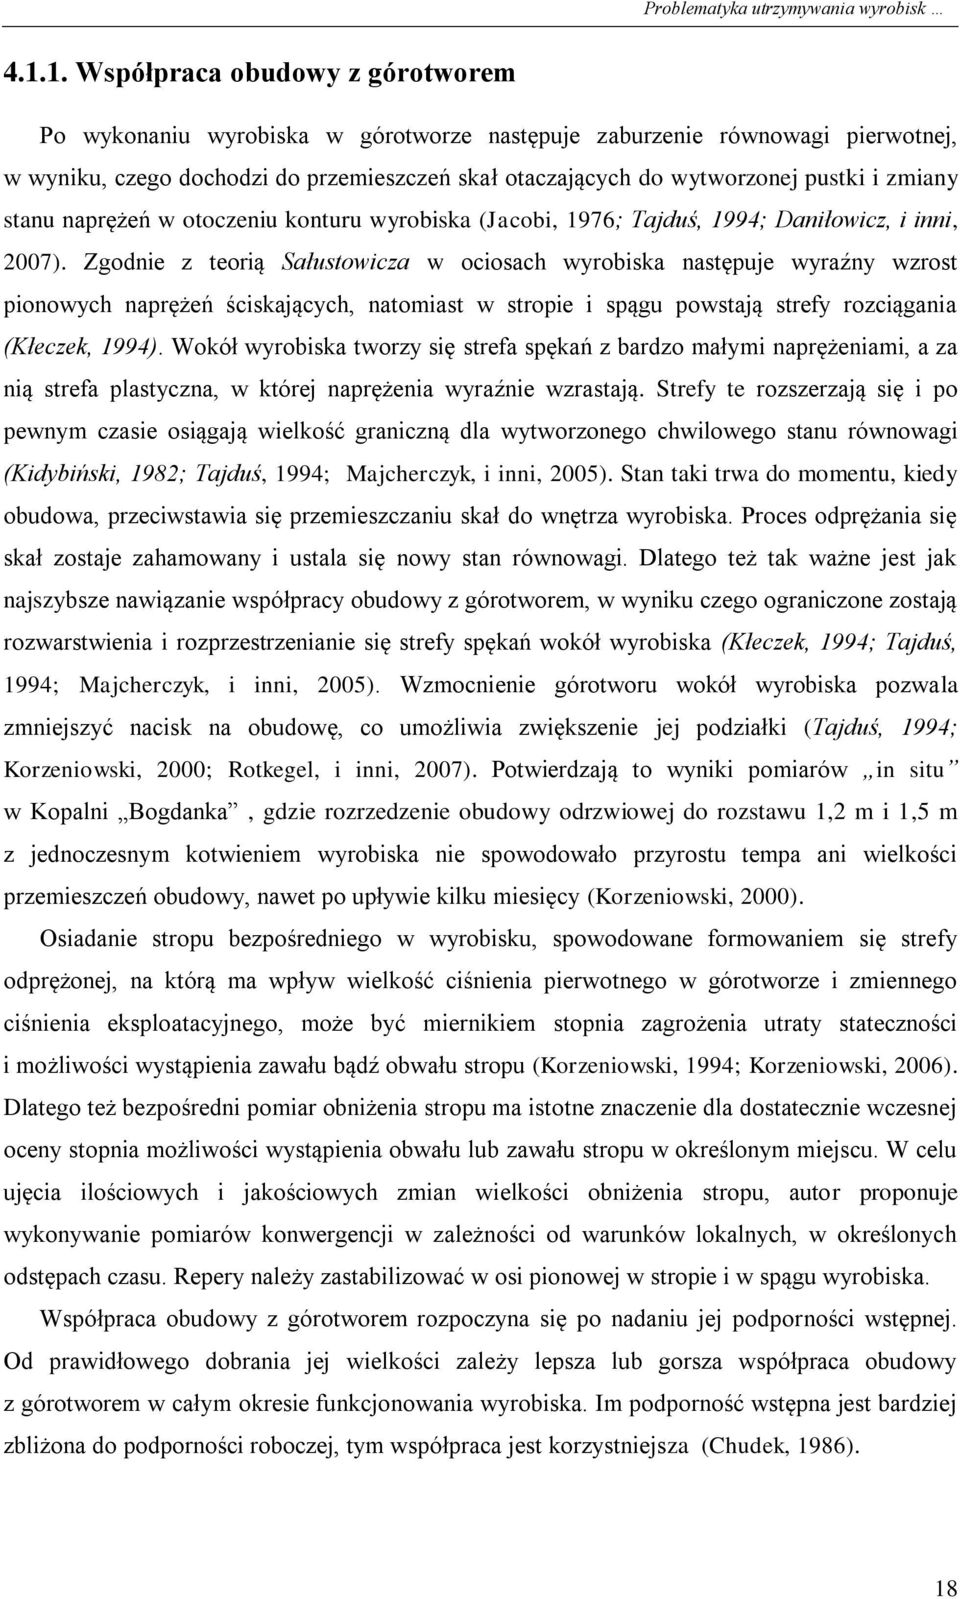 zmiany stanu naprężeń w otoczeniu konturu wyrobiska (Jacobi, 1976; Tajduś, 1994; Daniłowicz, i inni, 2007).